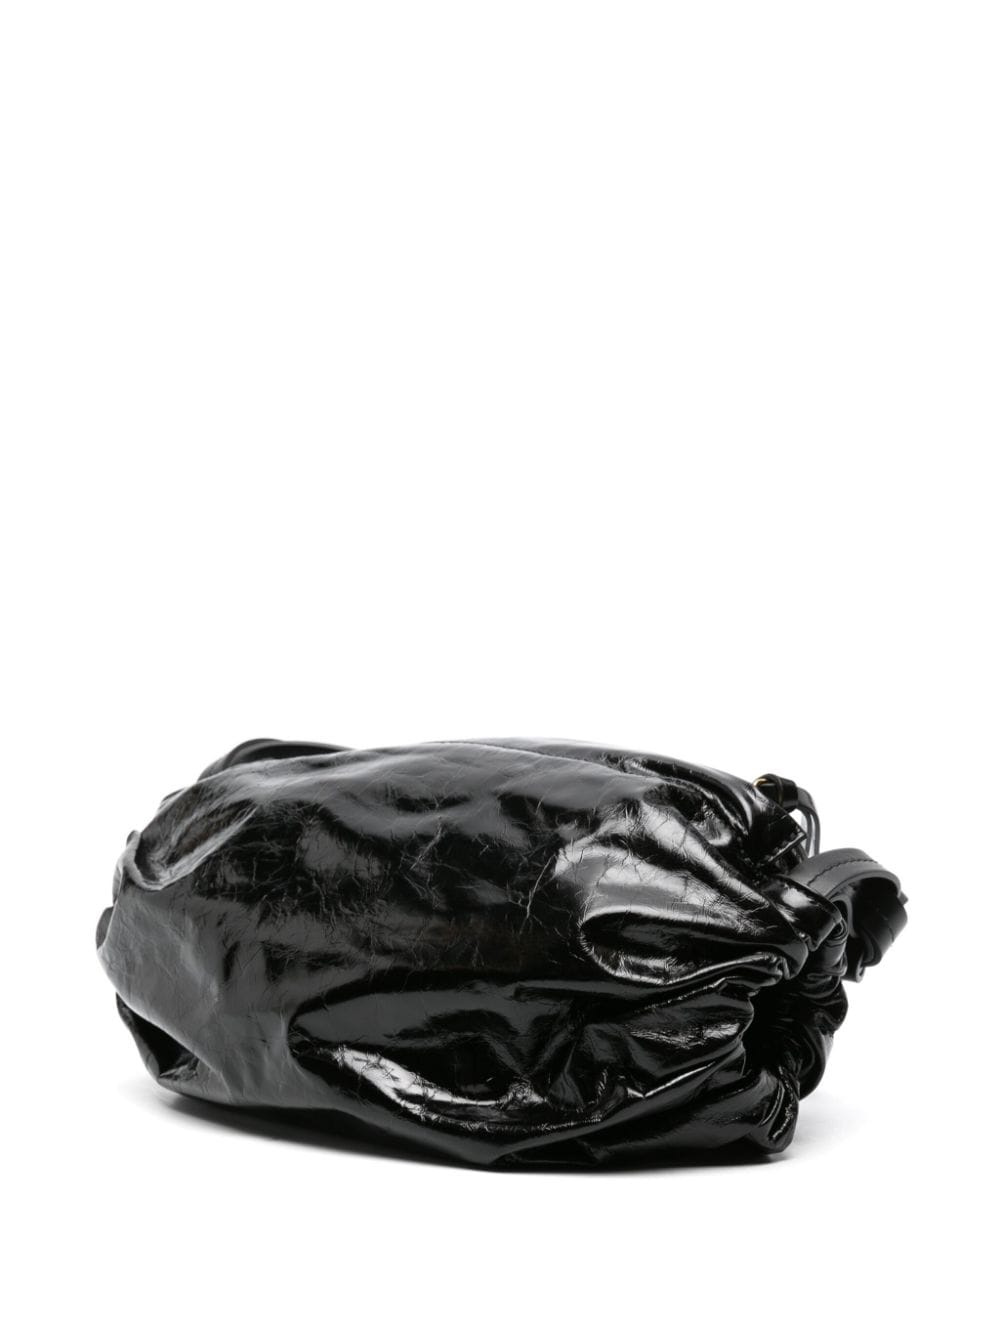 Túi xách vai da thật đen với chi tiết rút nếp